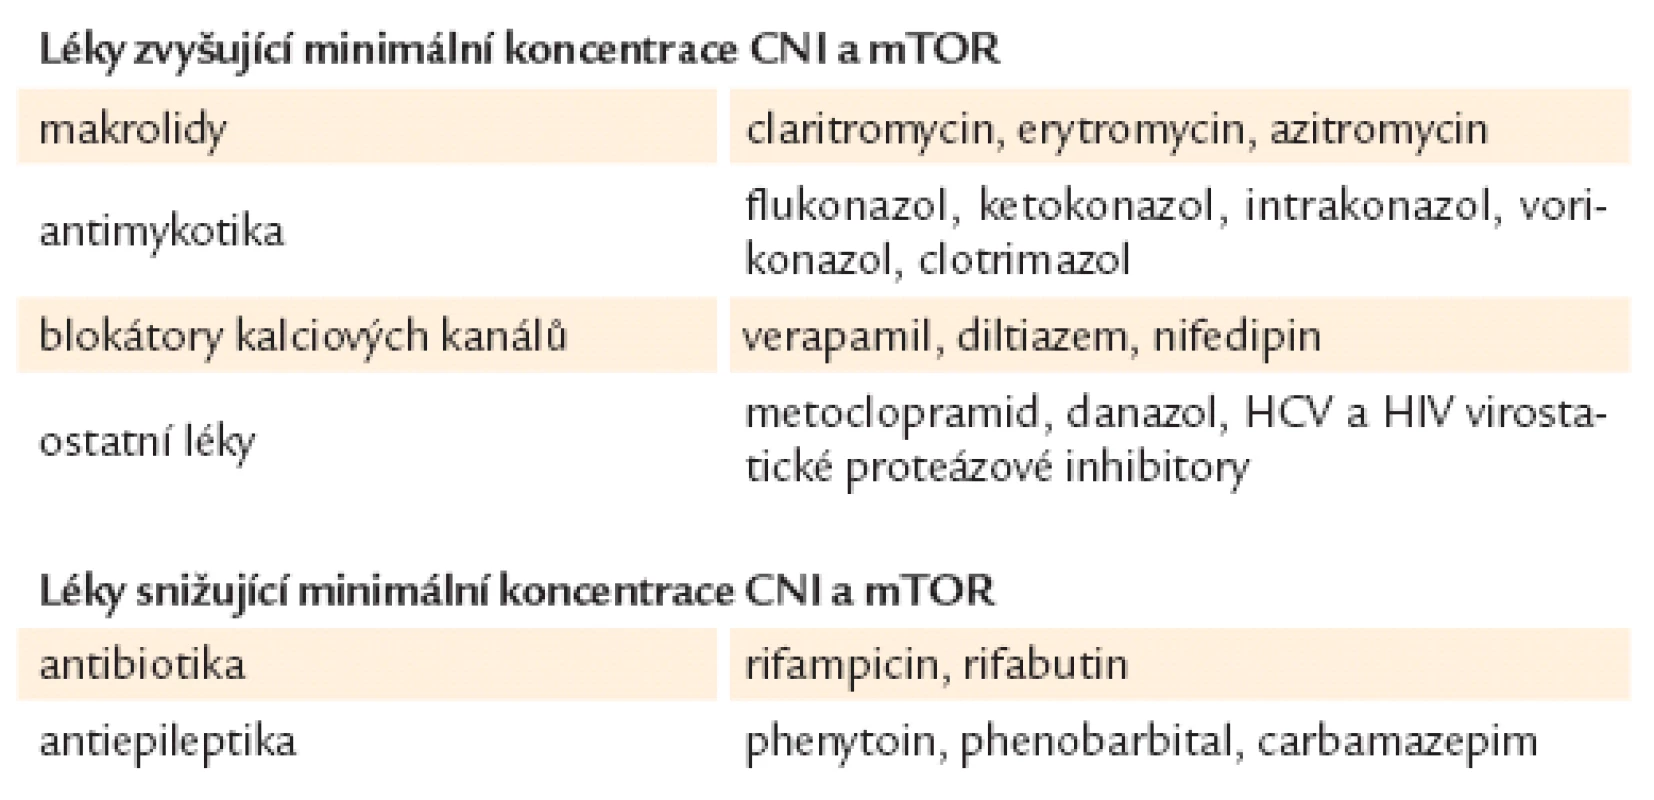 Nejběžnější lékové interakce mezi CNI a mTOR a ostatními léky [15].